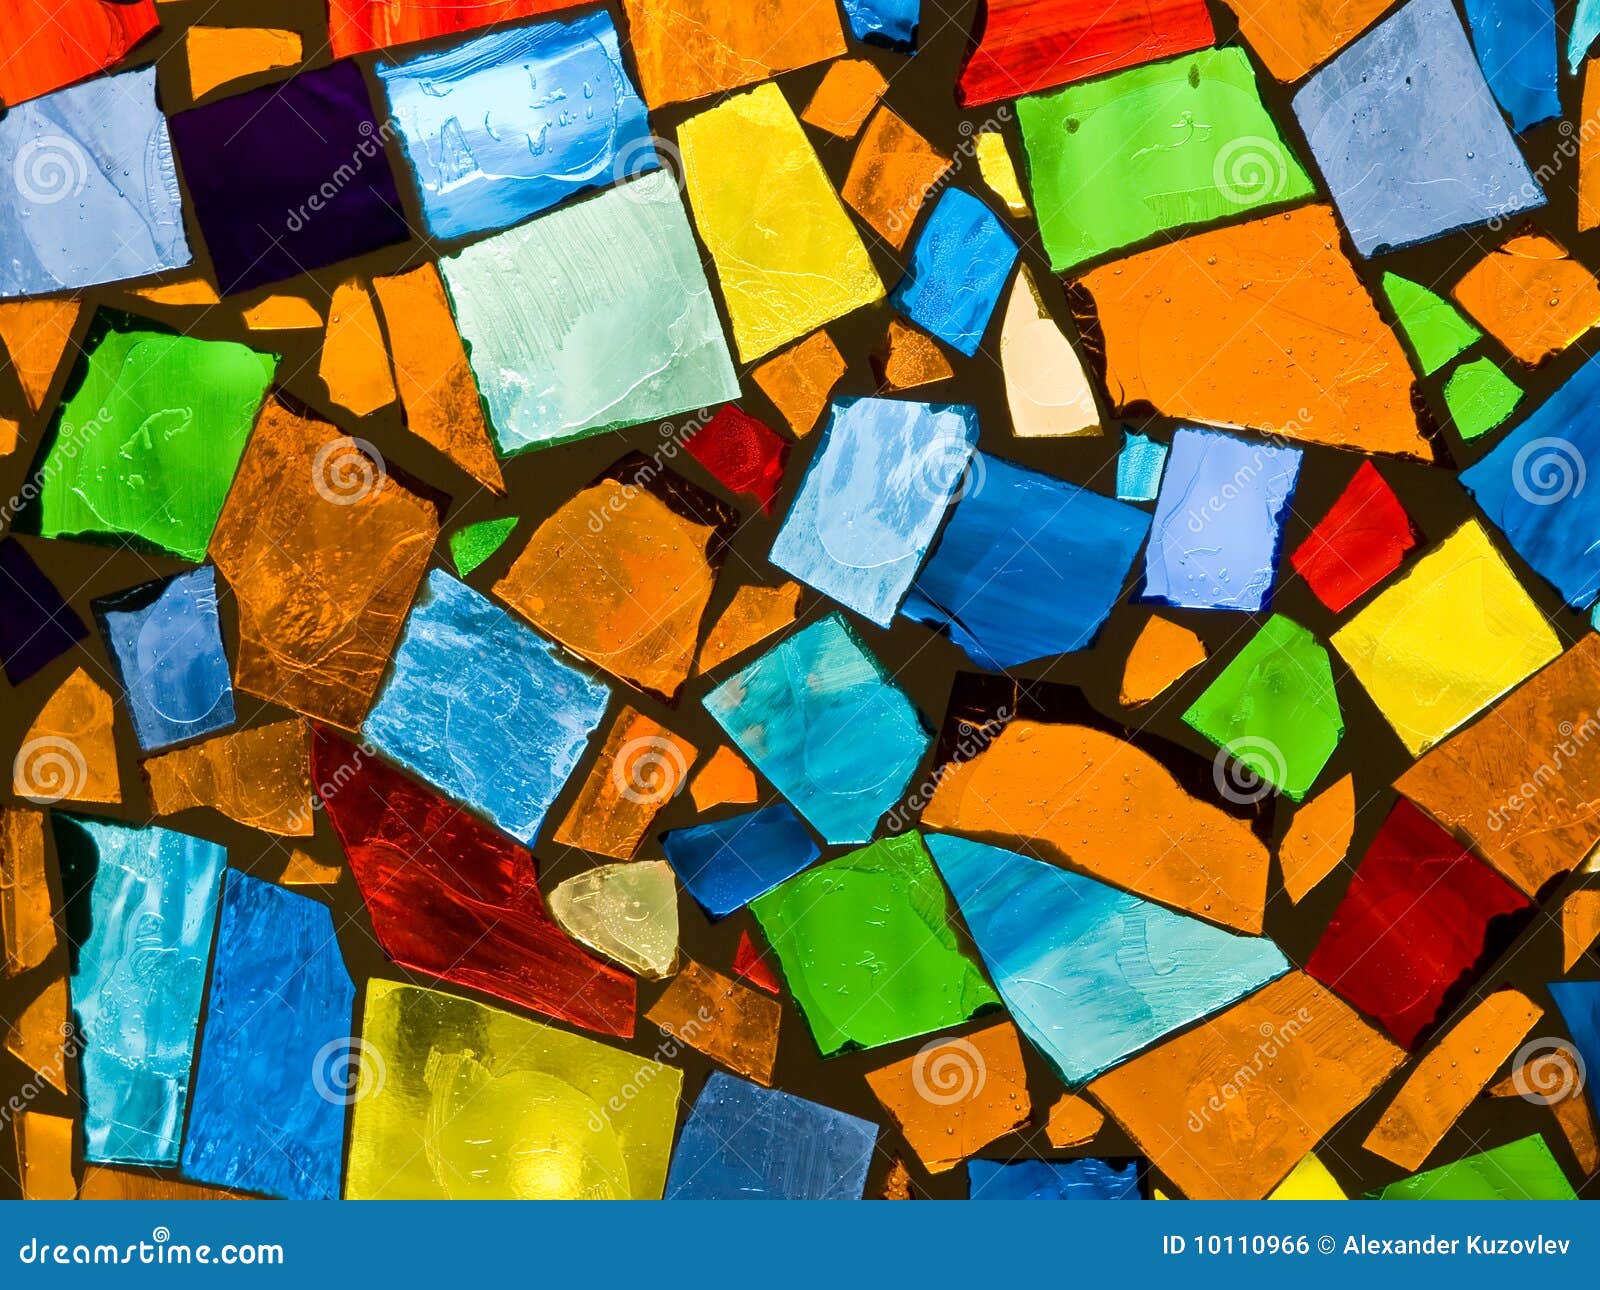 abstract mosaic